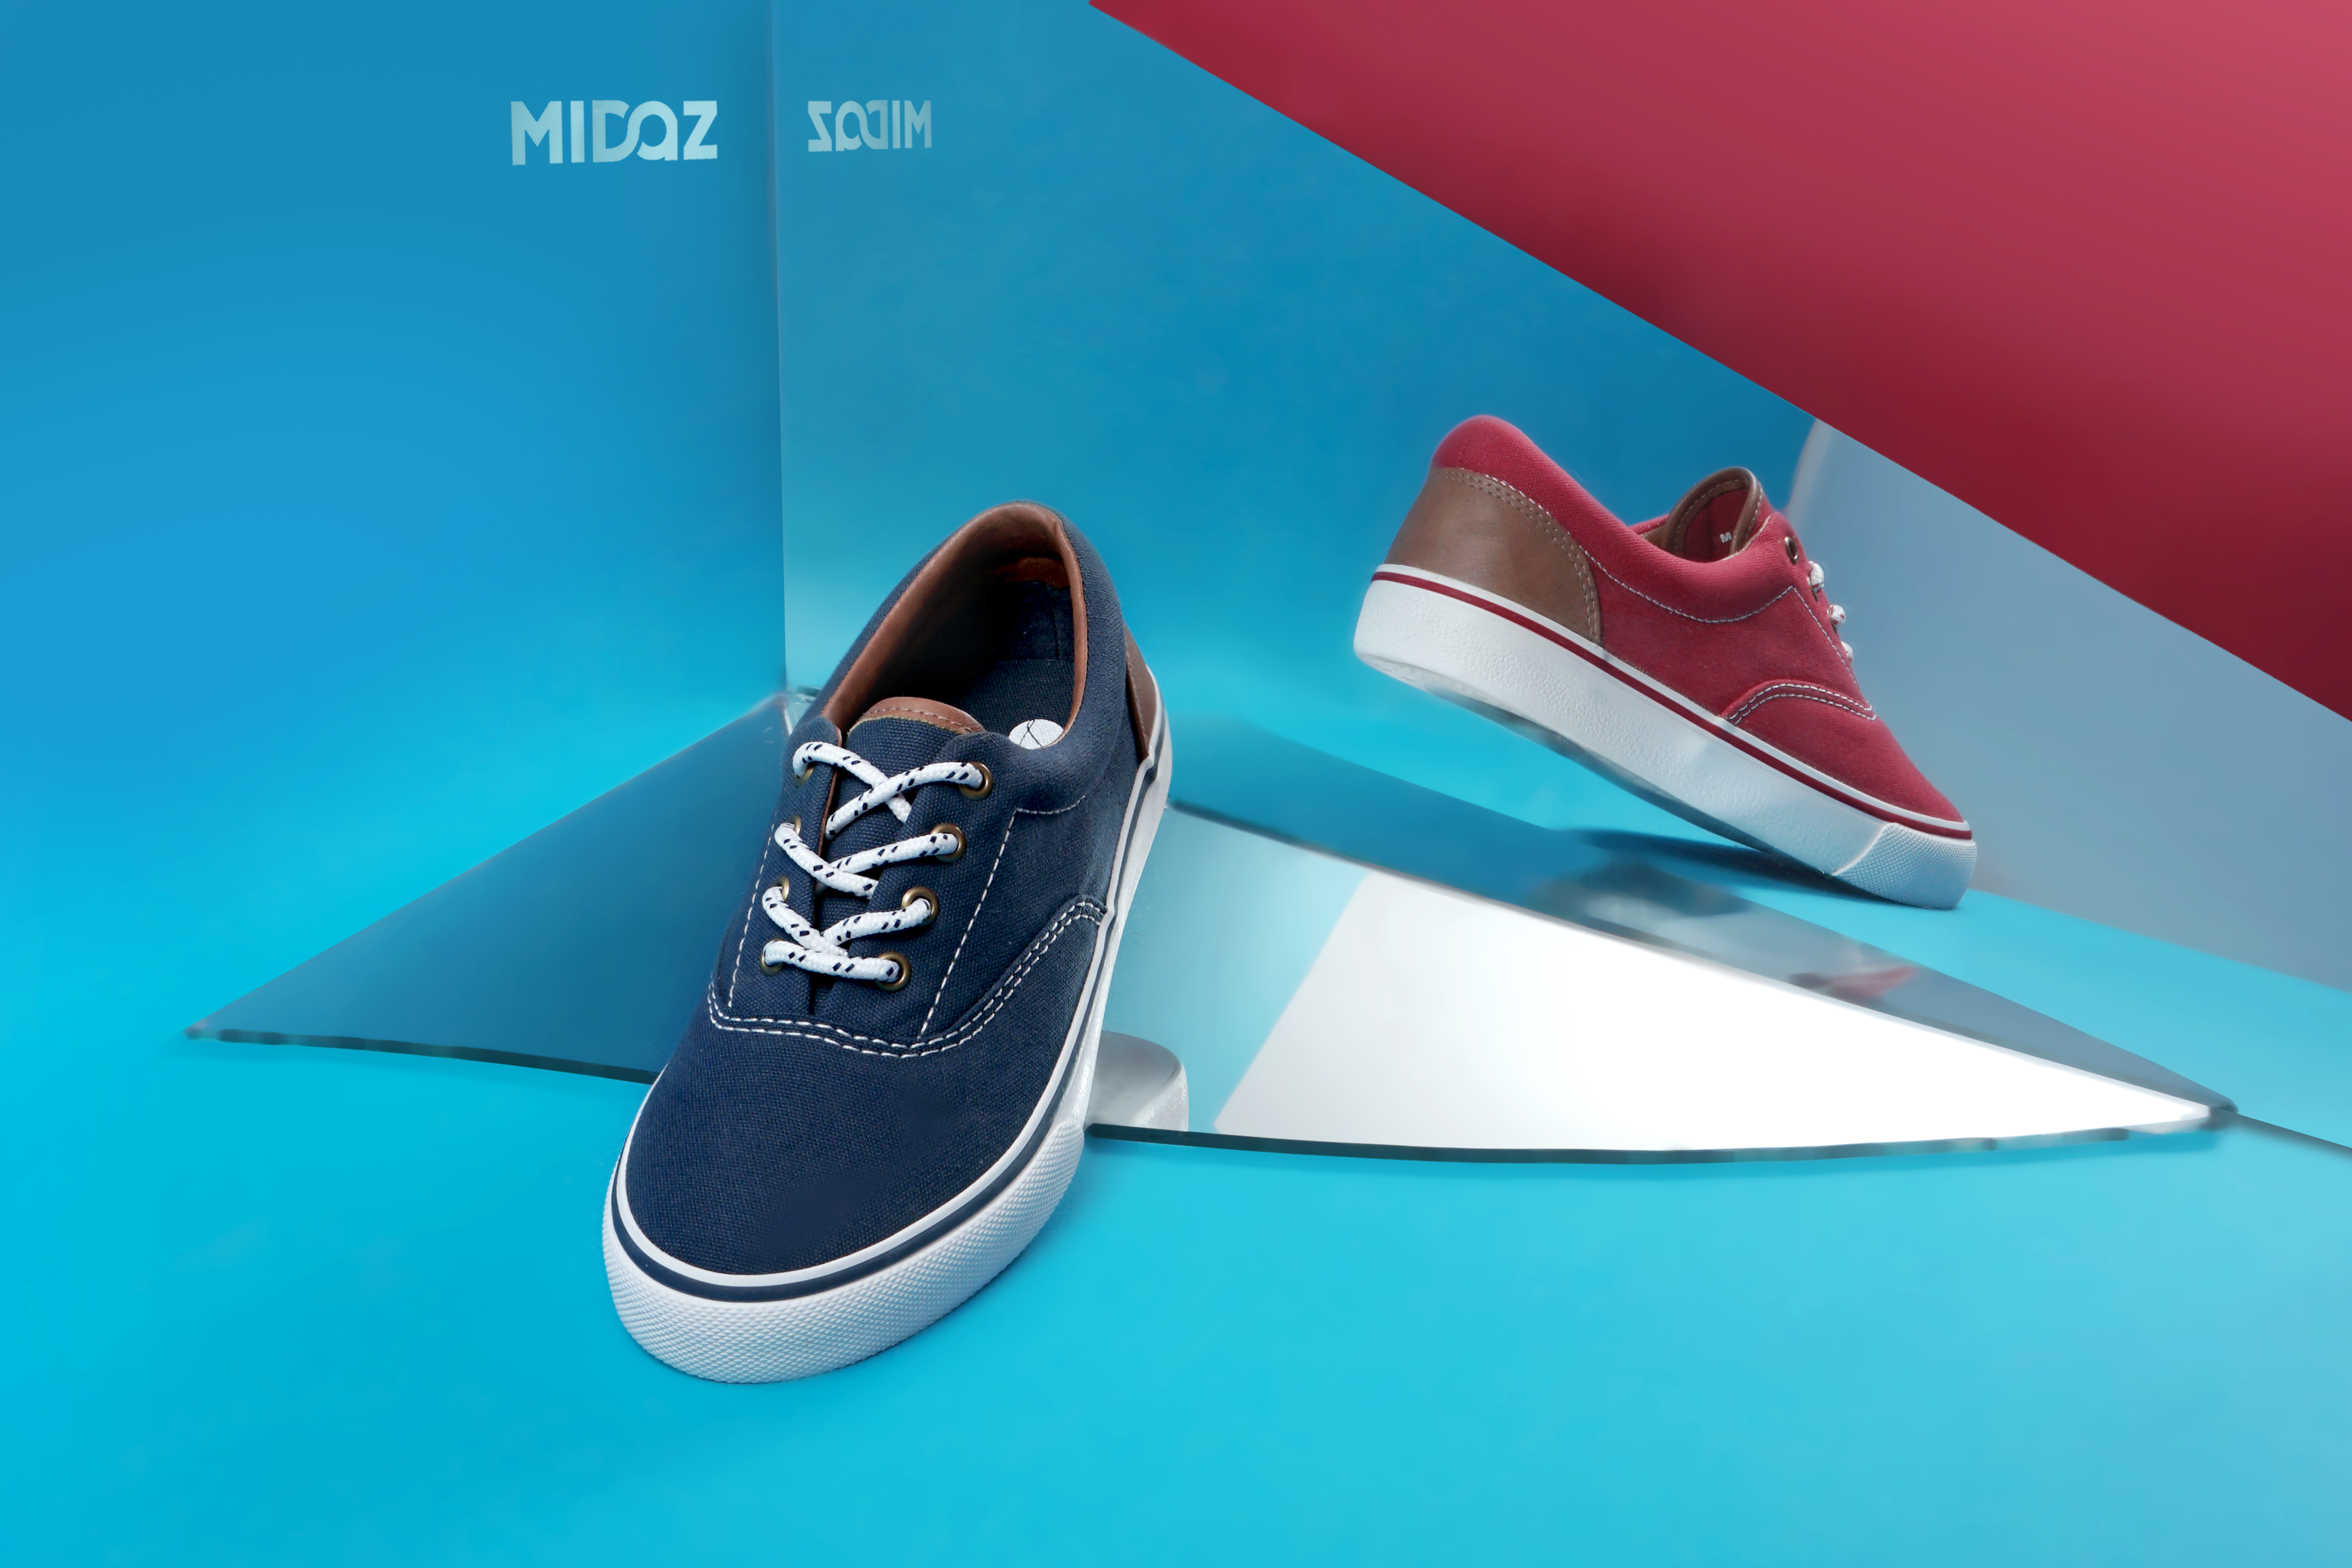 Midaz- BST mới nhất của thương hiệu hàng đầu về sneaker. 2